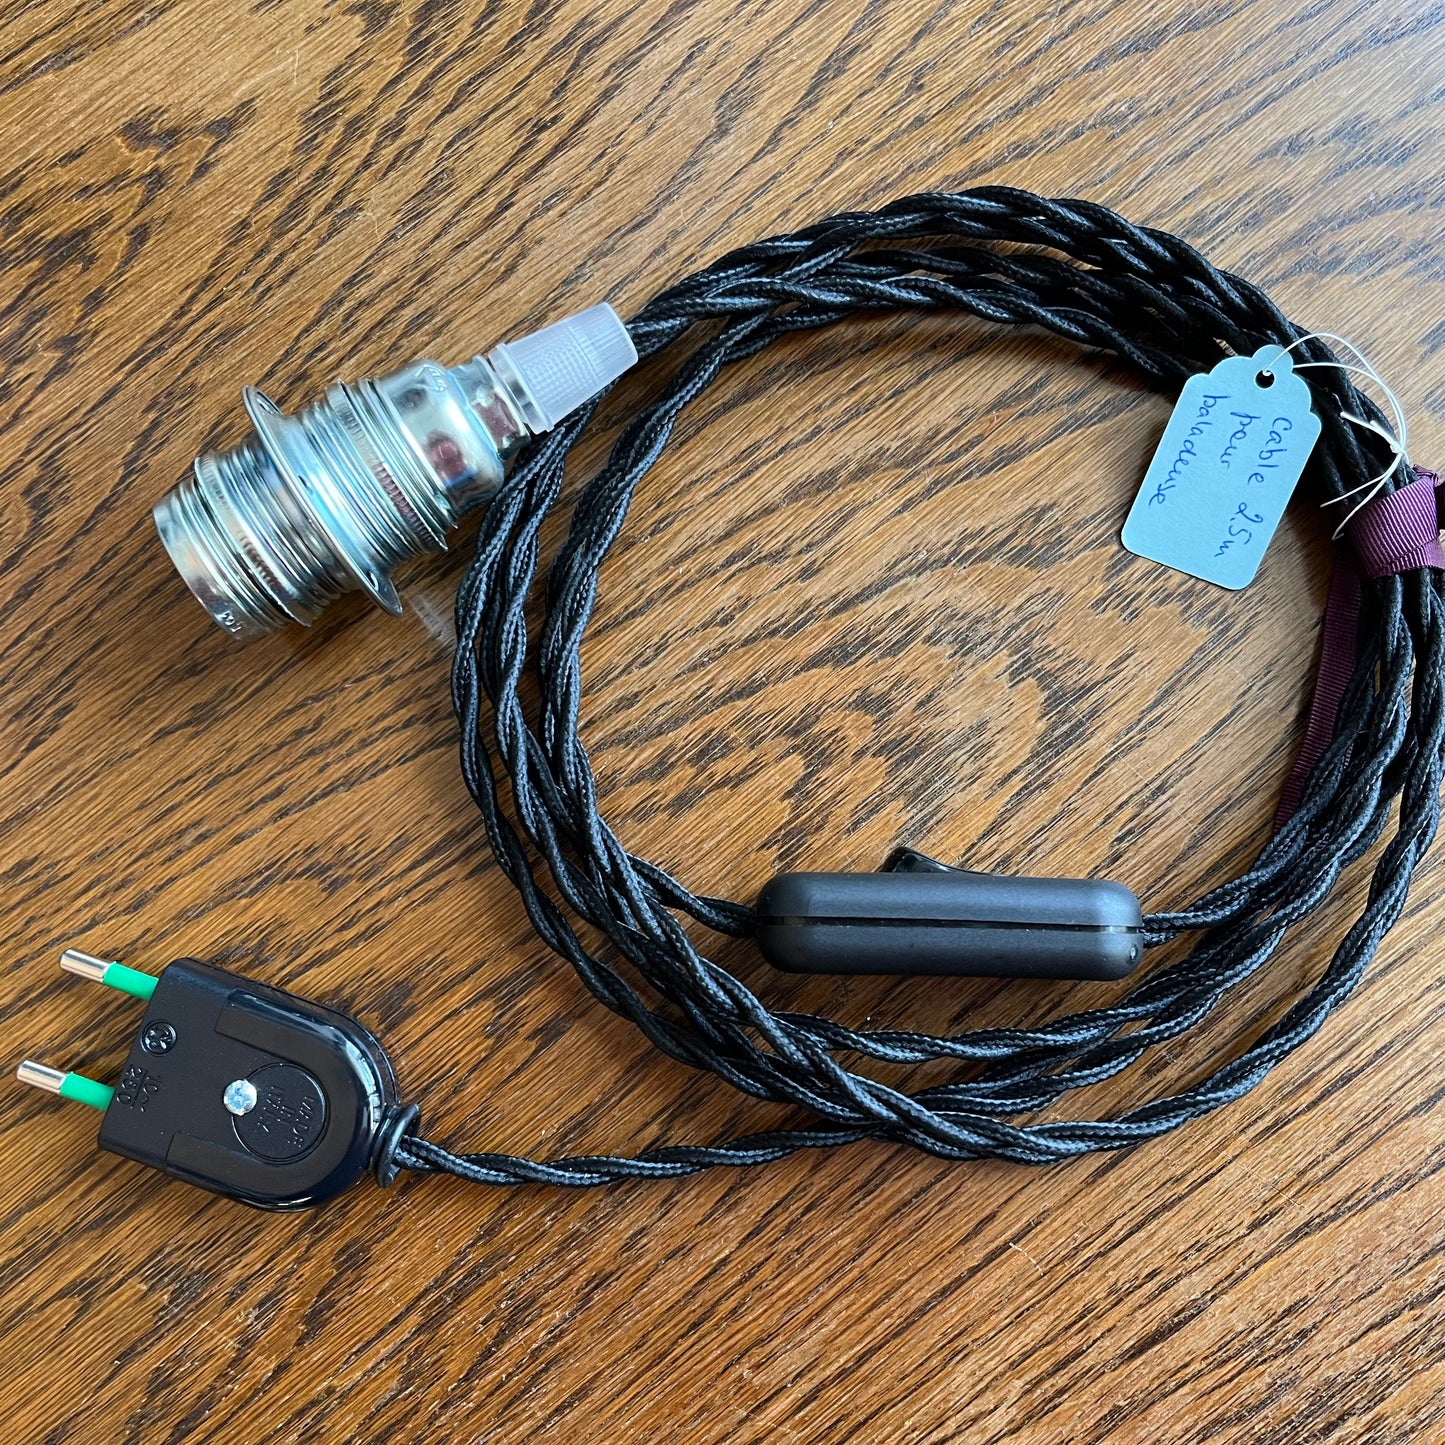 Câble textile pour une lampe baladeuse C002